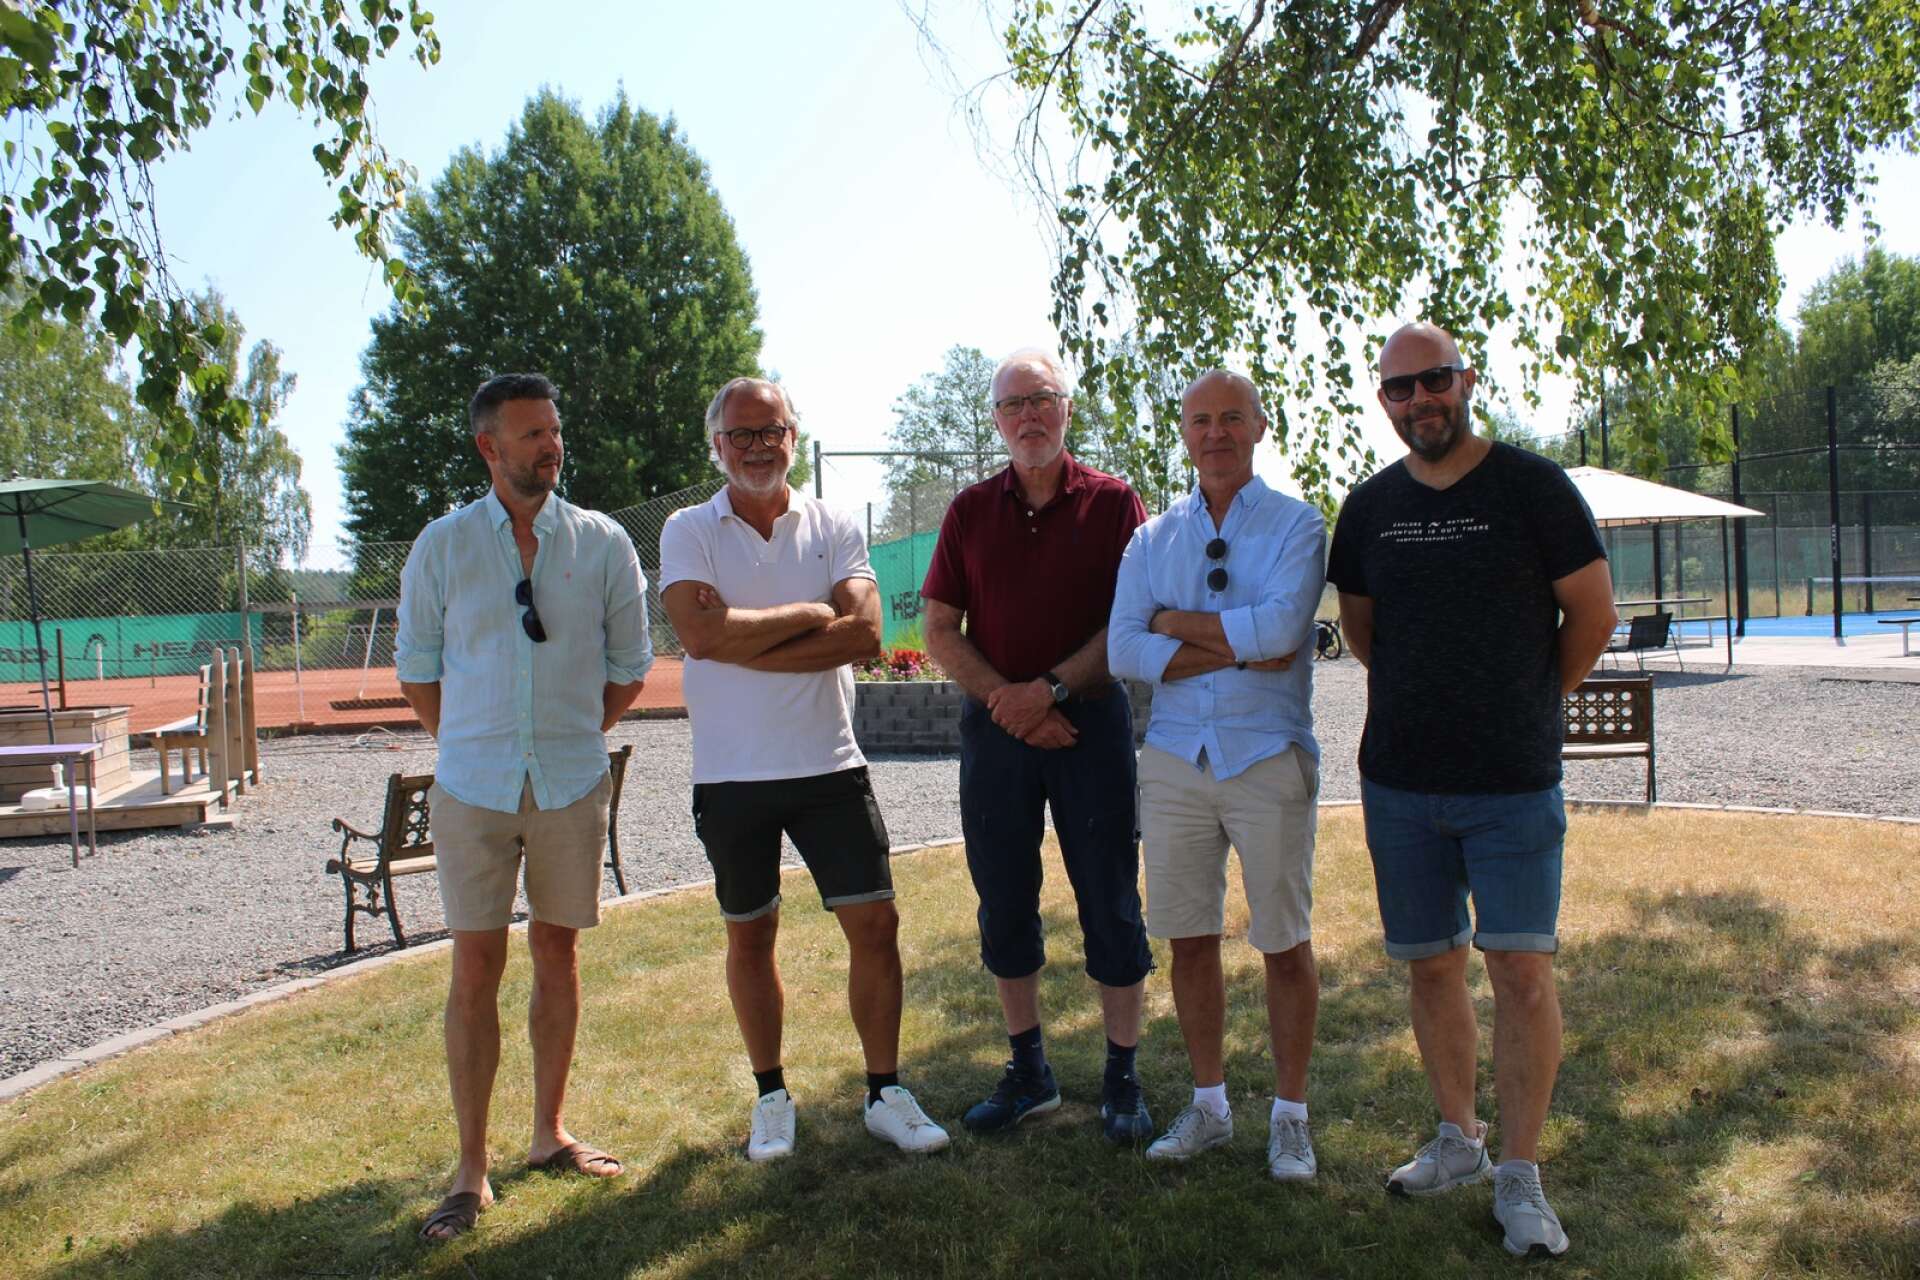 Styrelsen i Billerud TK: Joakim Berglund, Per-Åke Grunnan, KjellGöran Andersson, Björn Emanuelsson, Michael Haraldsson.